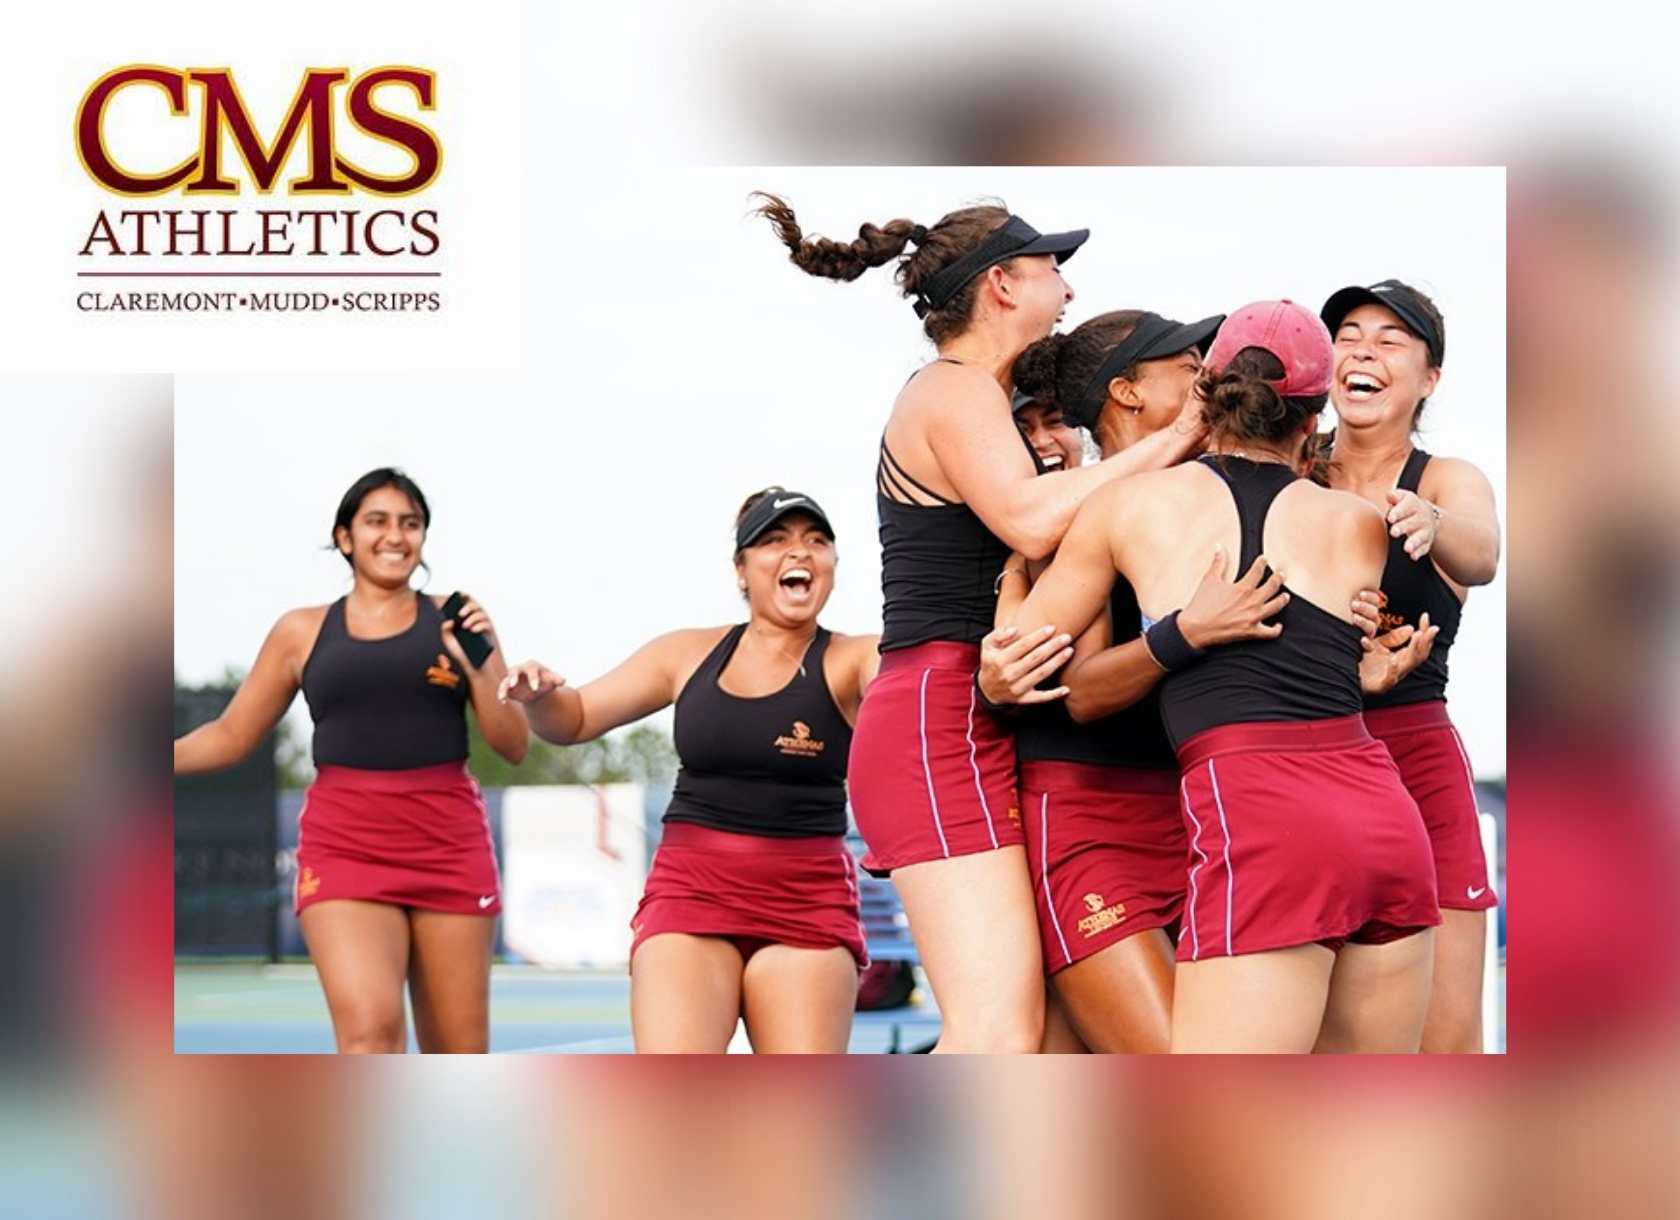 CMS Athenas tennis celebrates their NCAA Division III title